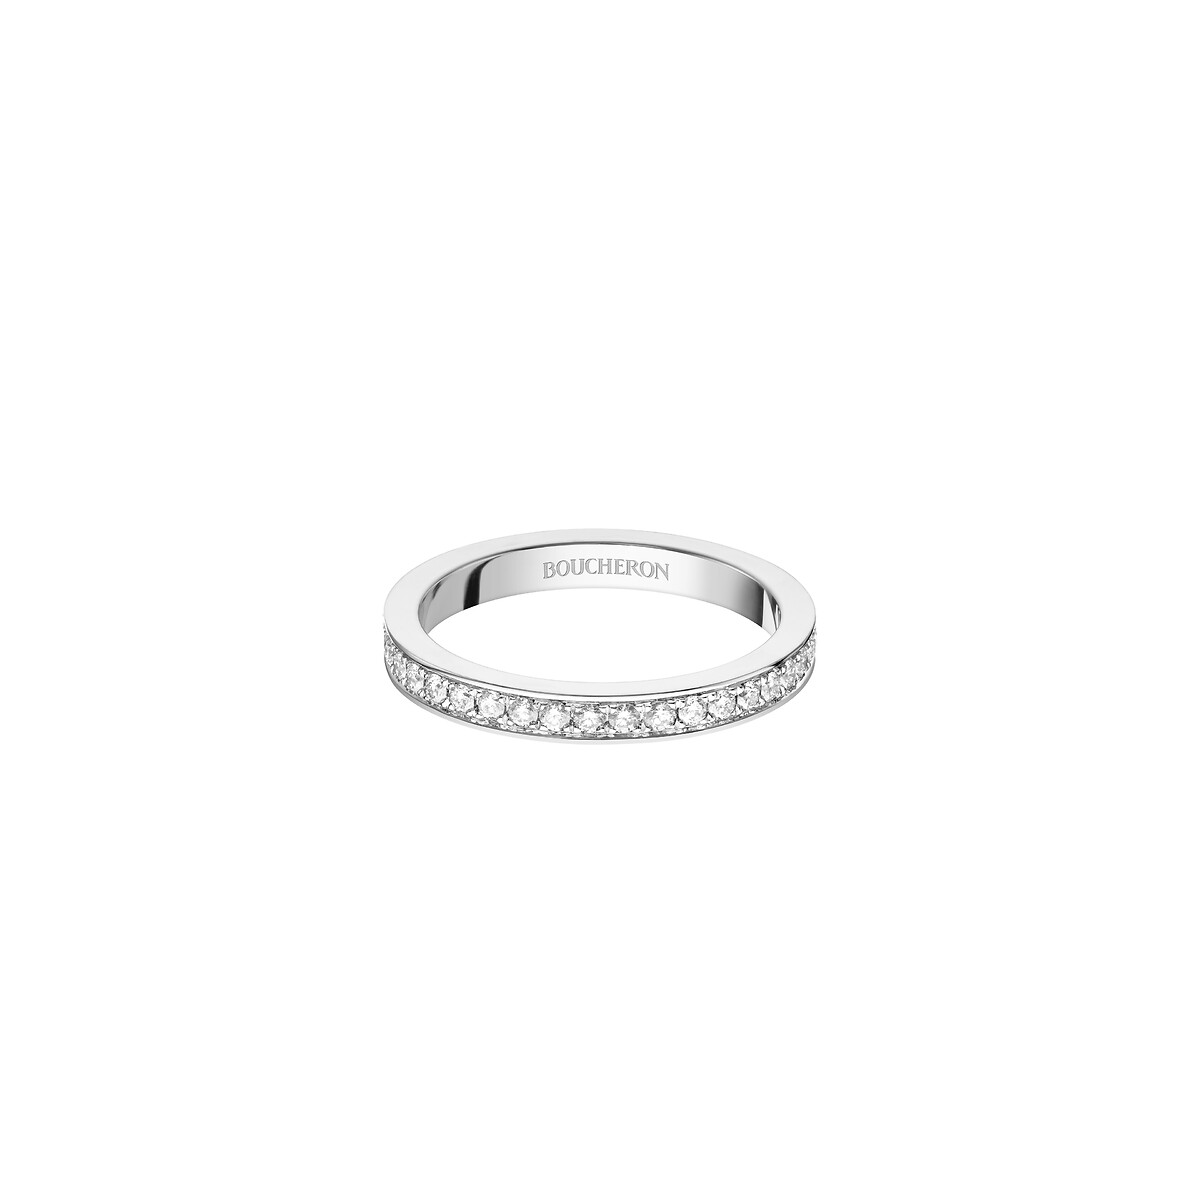 高級ブライダルリング | 結婚指輪 & 婚約指輪 | ブシュロン